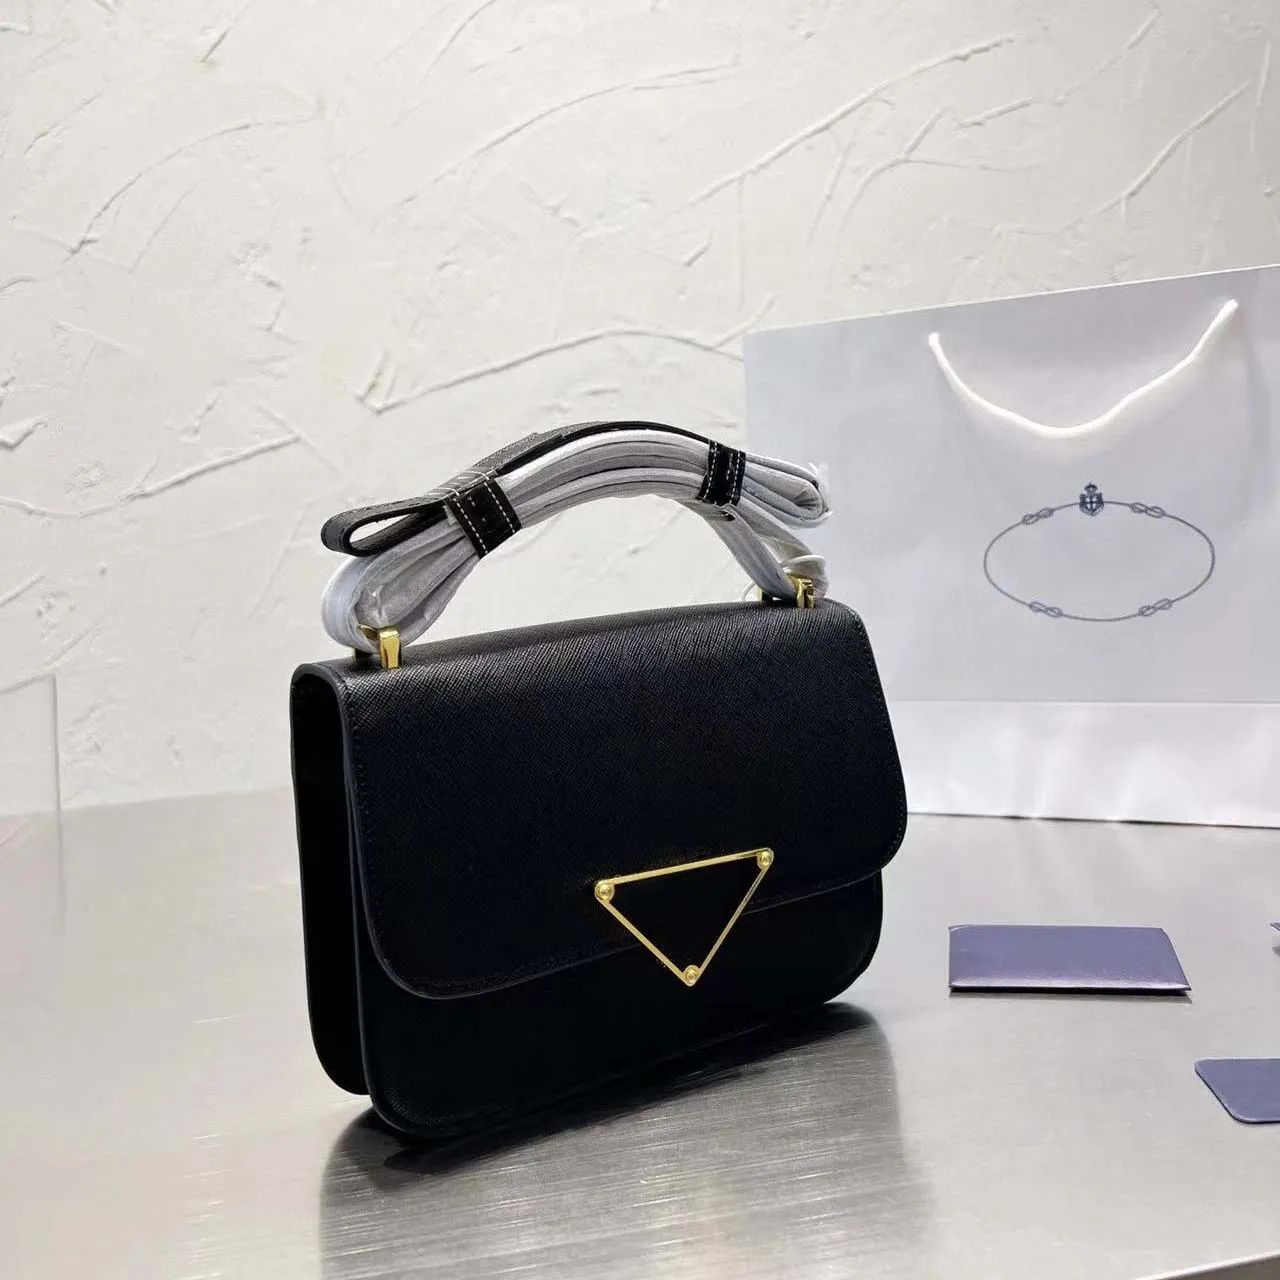 Новая большая сумка, качественная дизайнерская кожаная эмблема, сафьяновая сумка на плечо, конверт, роскошные сумки, сумка-конверт, сумка через плечо, кошелек из натуральной кожи